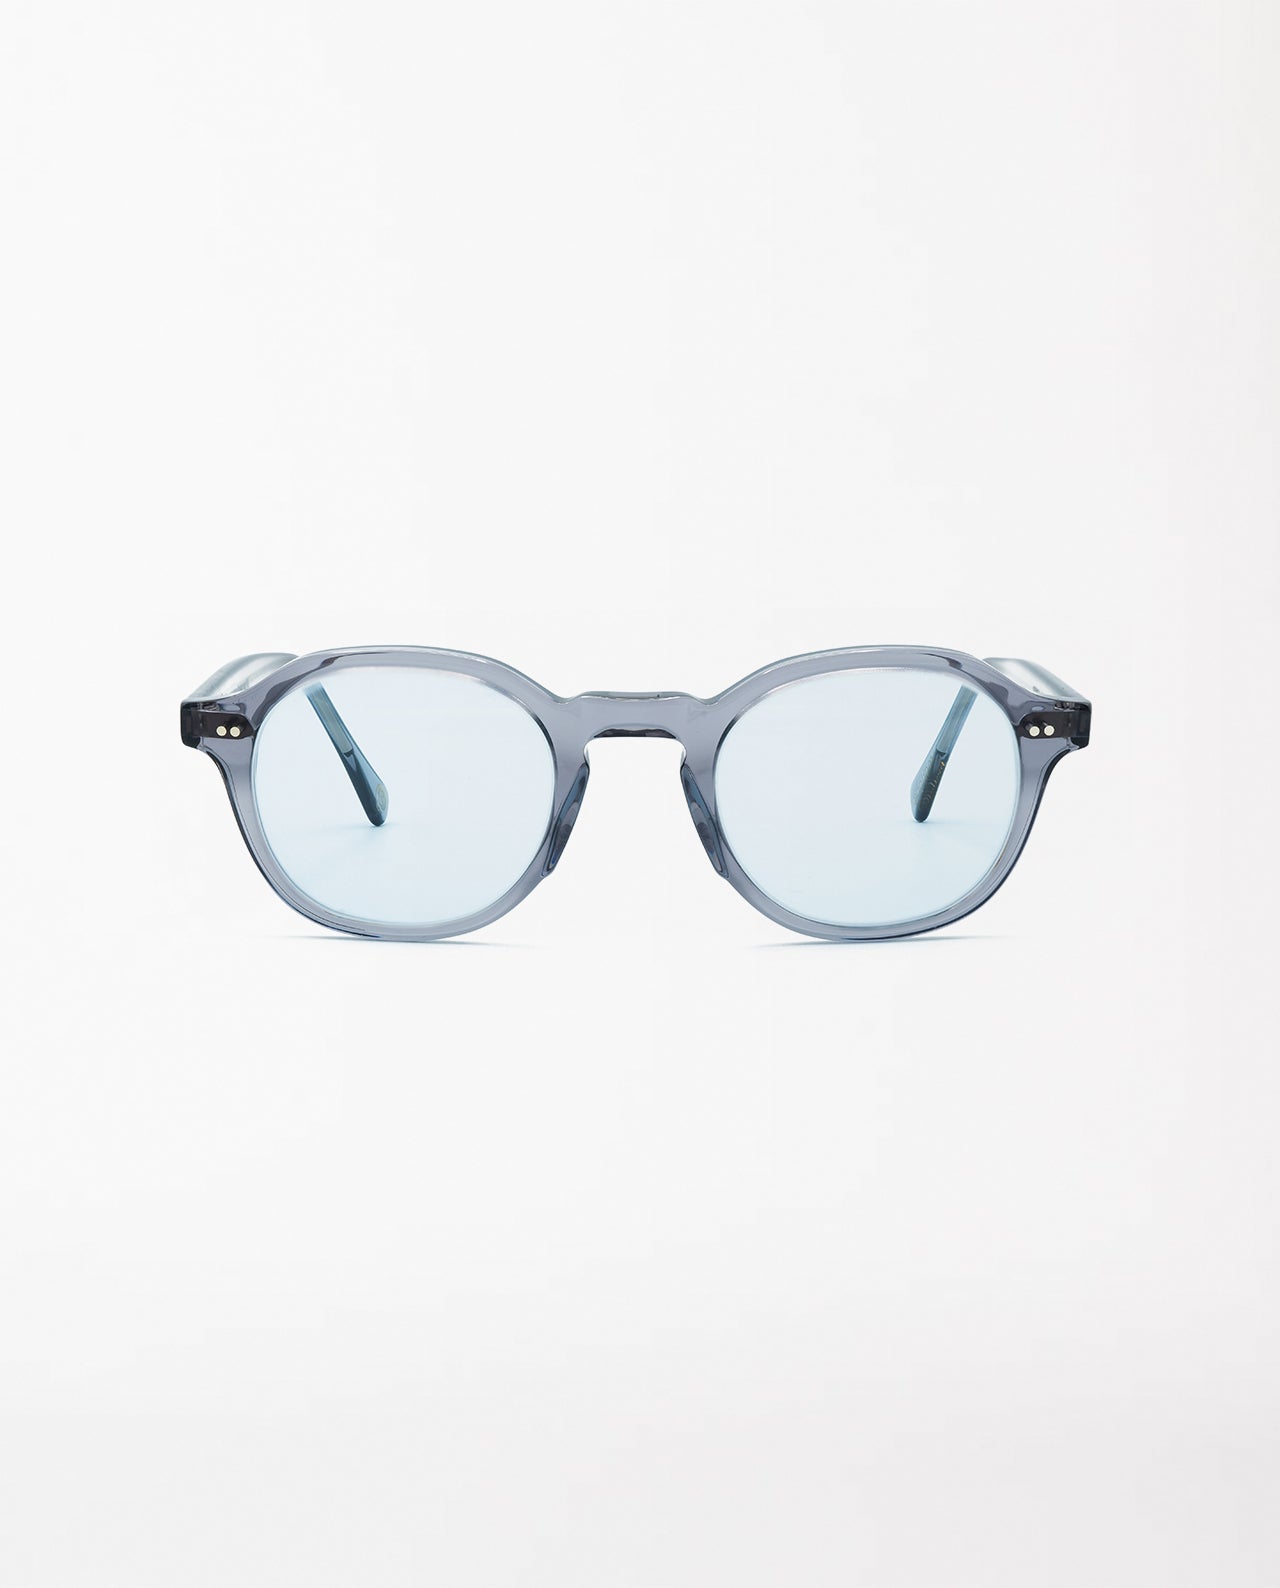 marché commun marlone eyewear lunettes solaires soleil origine france garantie cornell pastel blue gris sélenite